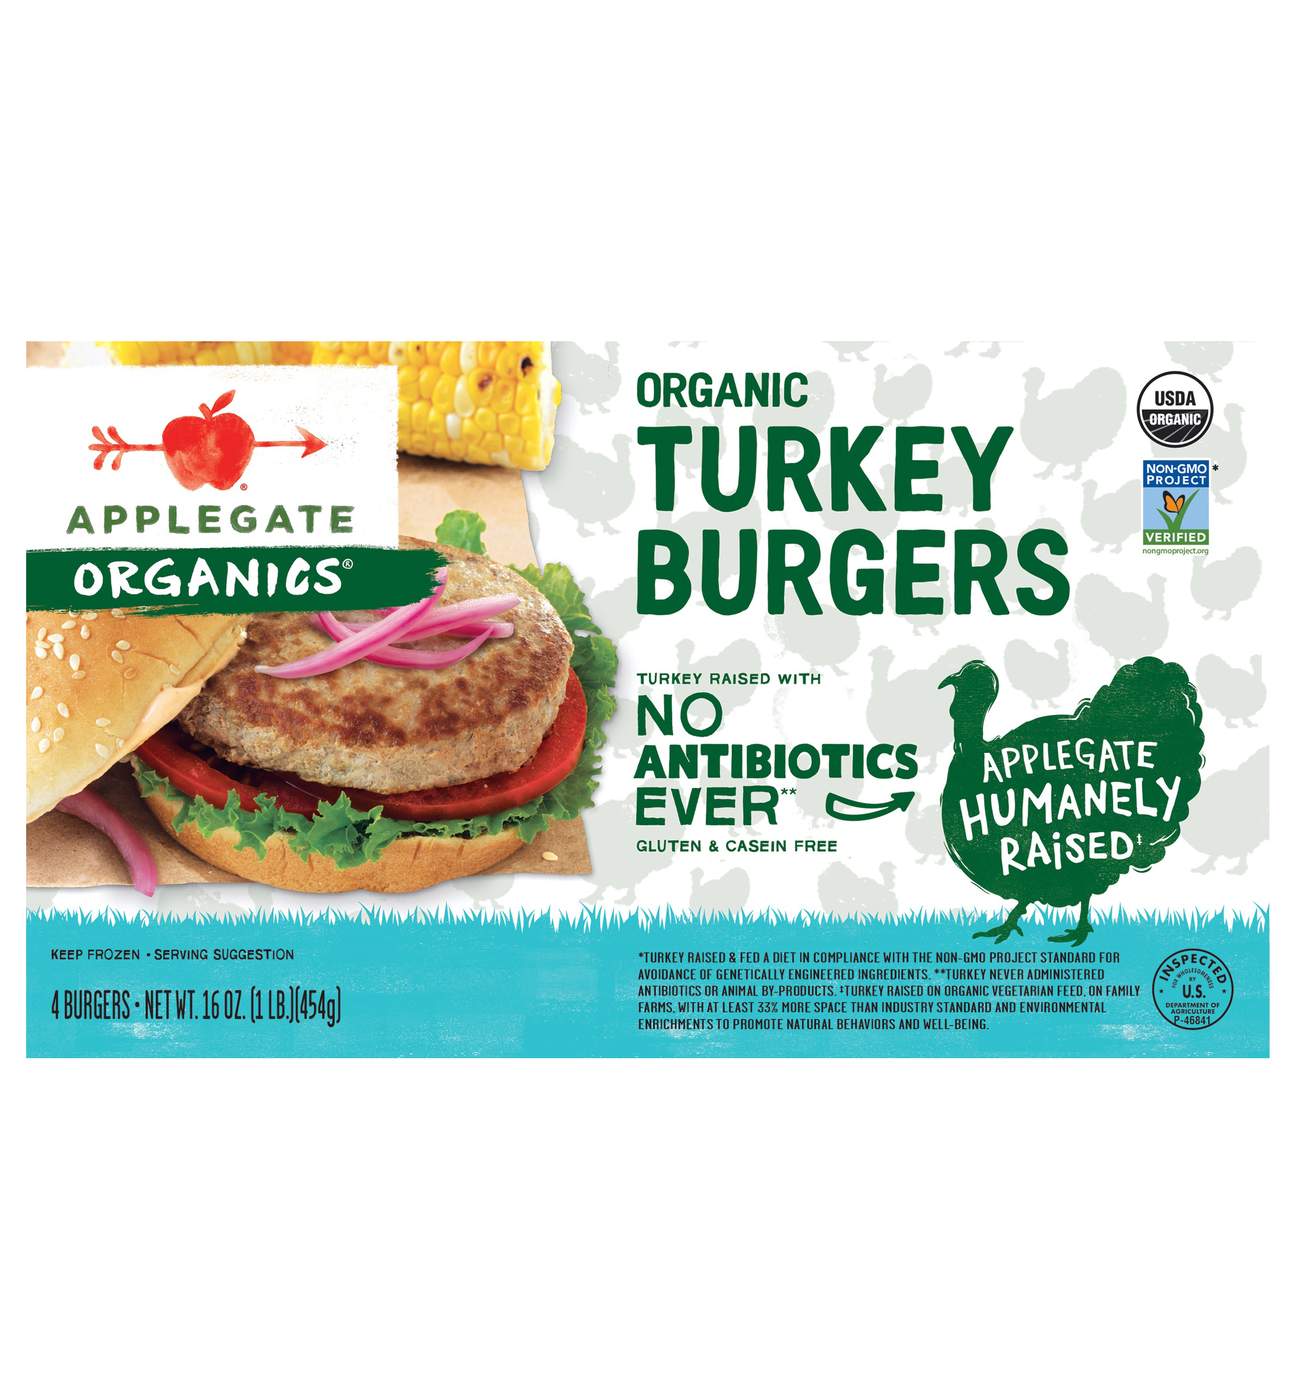 Applegate Organics Turkey Burgers; image 1 of 3